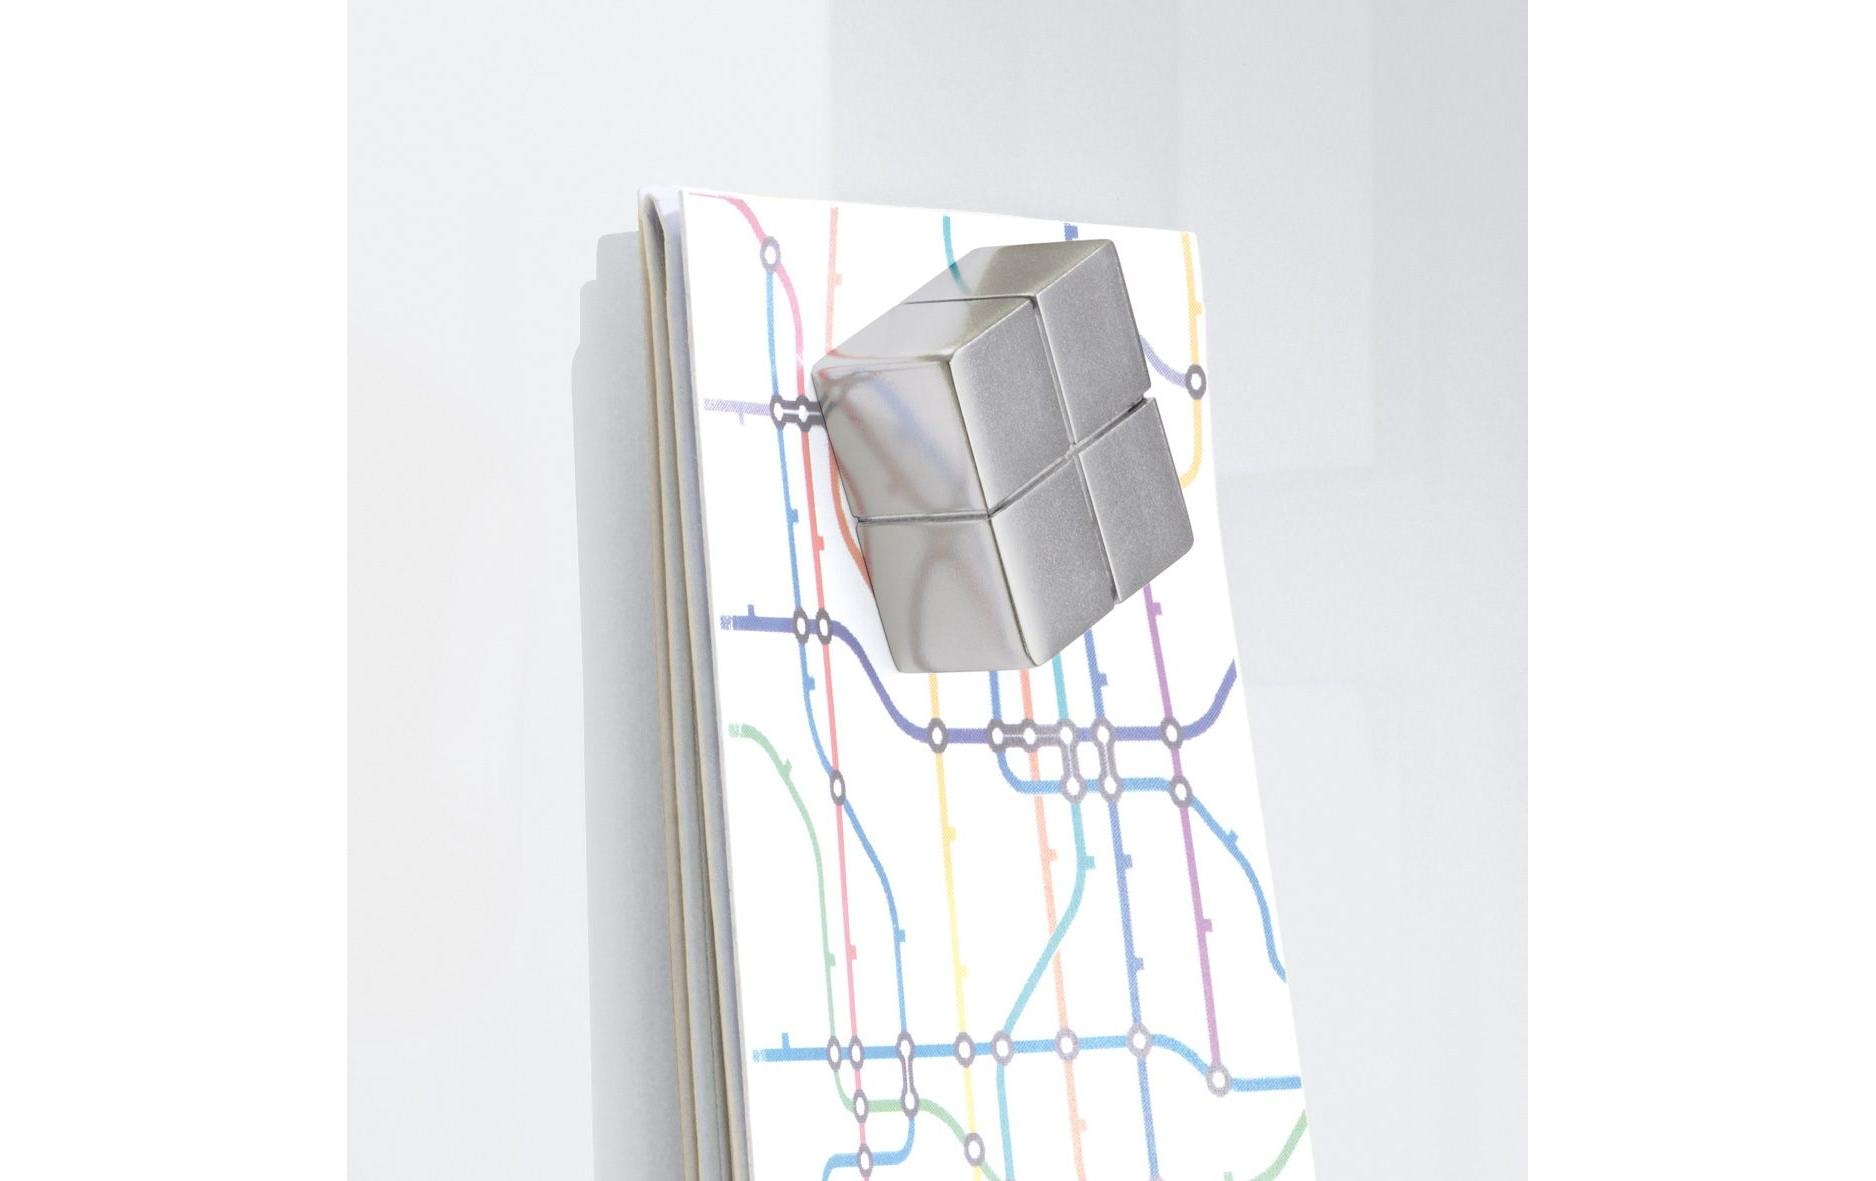 Sigel Magnethaftendes Glassboard Artverum S 130 x 55 cm, Weiss